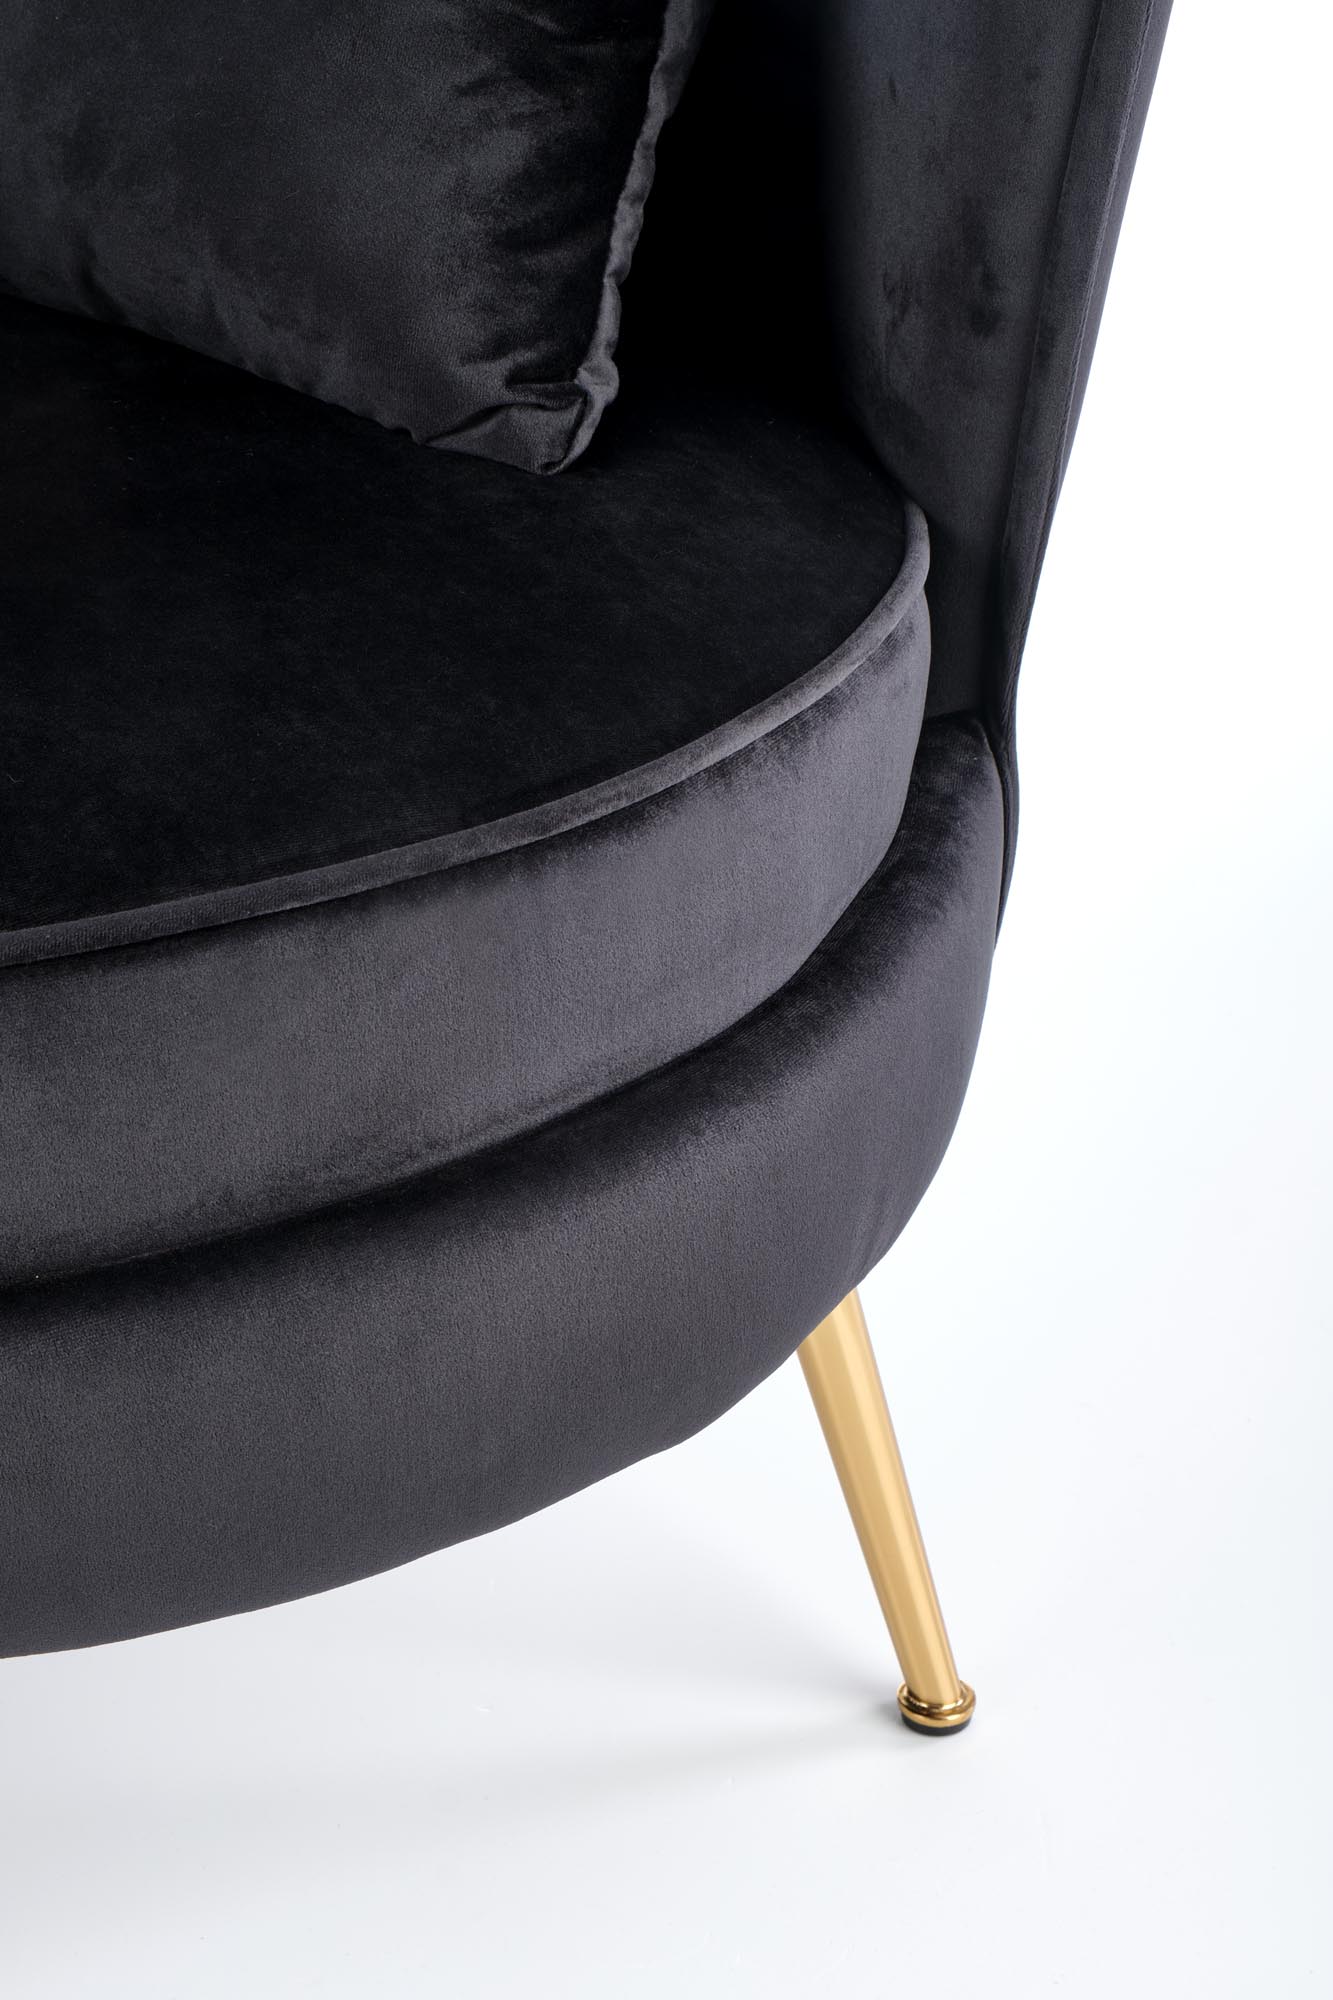 Juodos spalvos fotelis ALMOND auksines chromuotos kojos